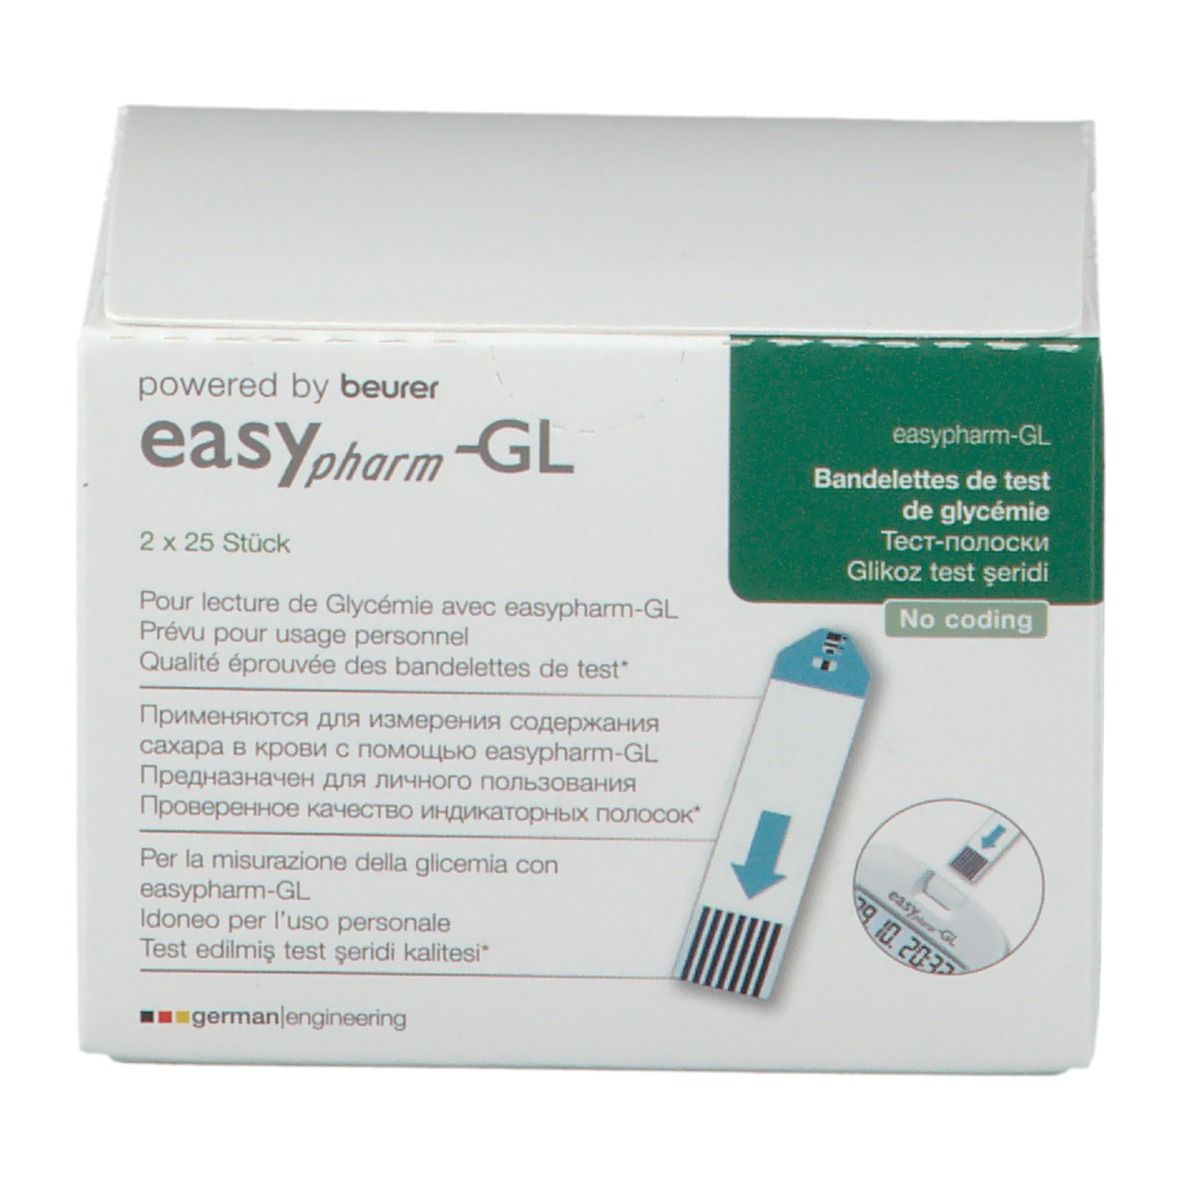 easypharm-GL Blutzucker-Teststreifen